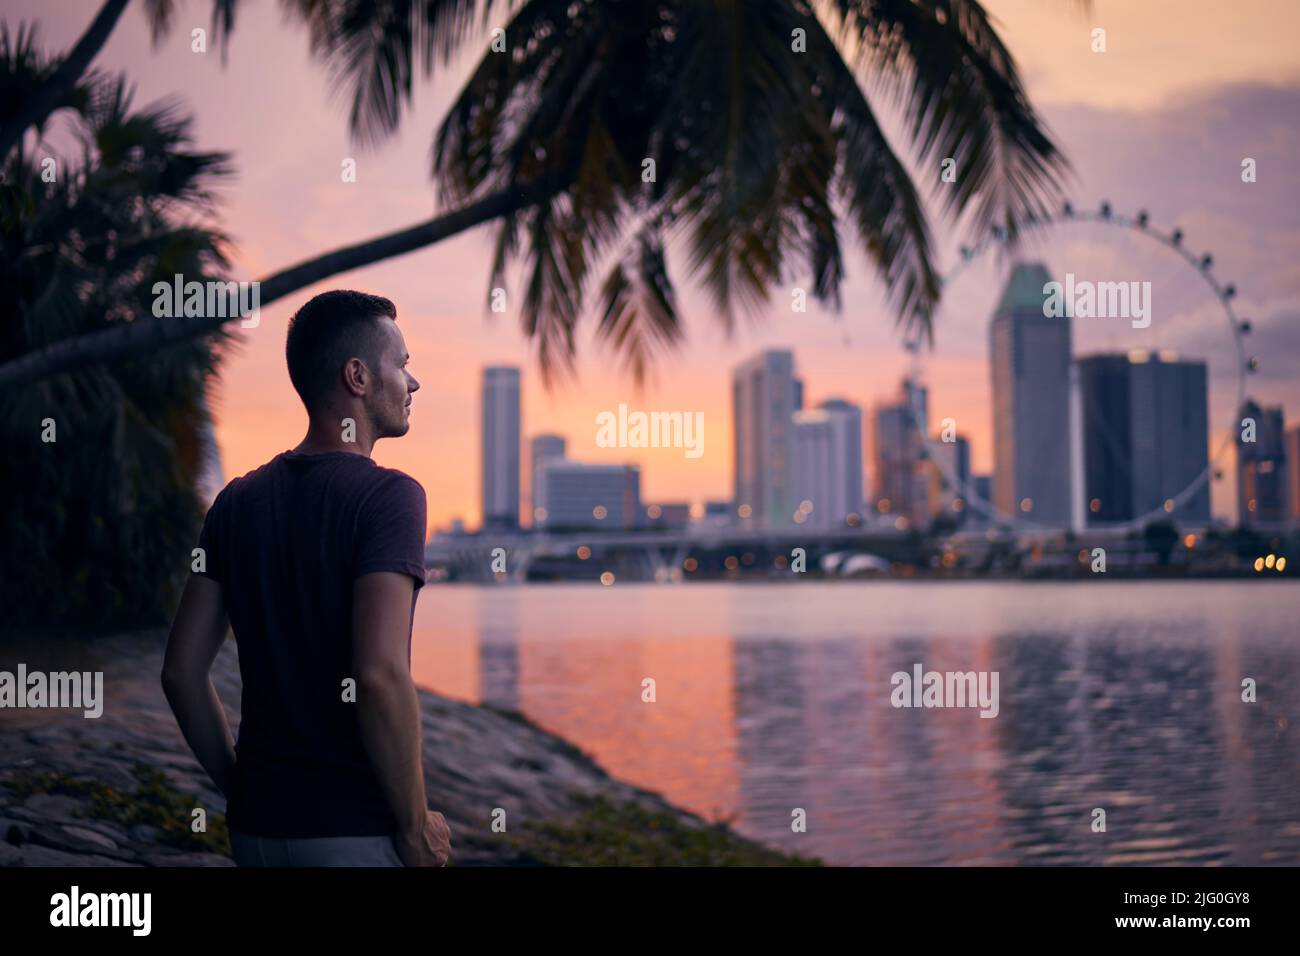 Ein hübscher Mann, der unter einer Palme am Ufer der Bucht steht und die Stadt anschaut. Skyline der Stadt bei Sonnenuntergang, Singapur. Stockfoto